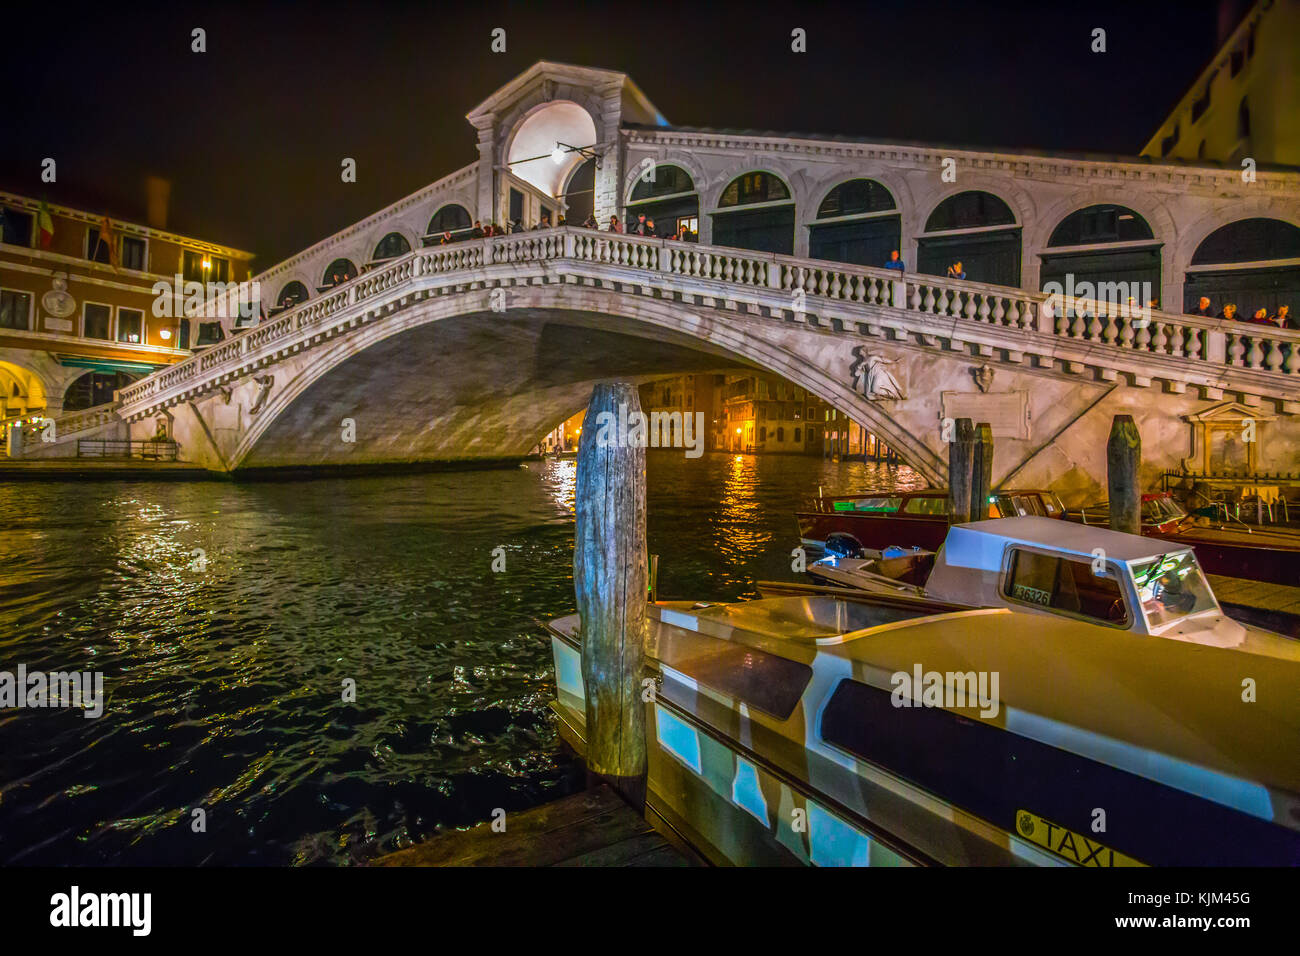 Venecia (Venezia), Italia, 17 de octubre de 2017 - vista del puente de Rialto de Venecia de noche, Italia. Foto de stock